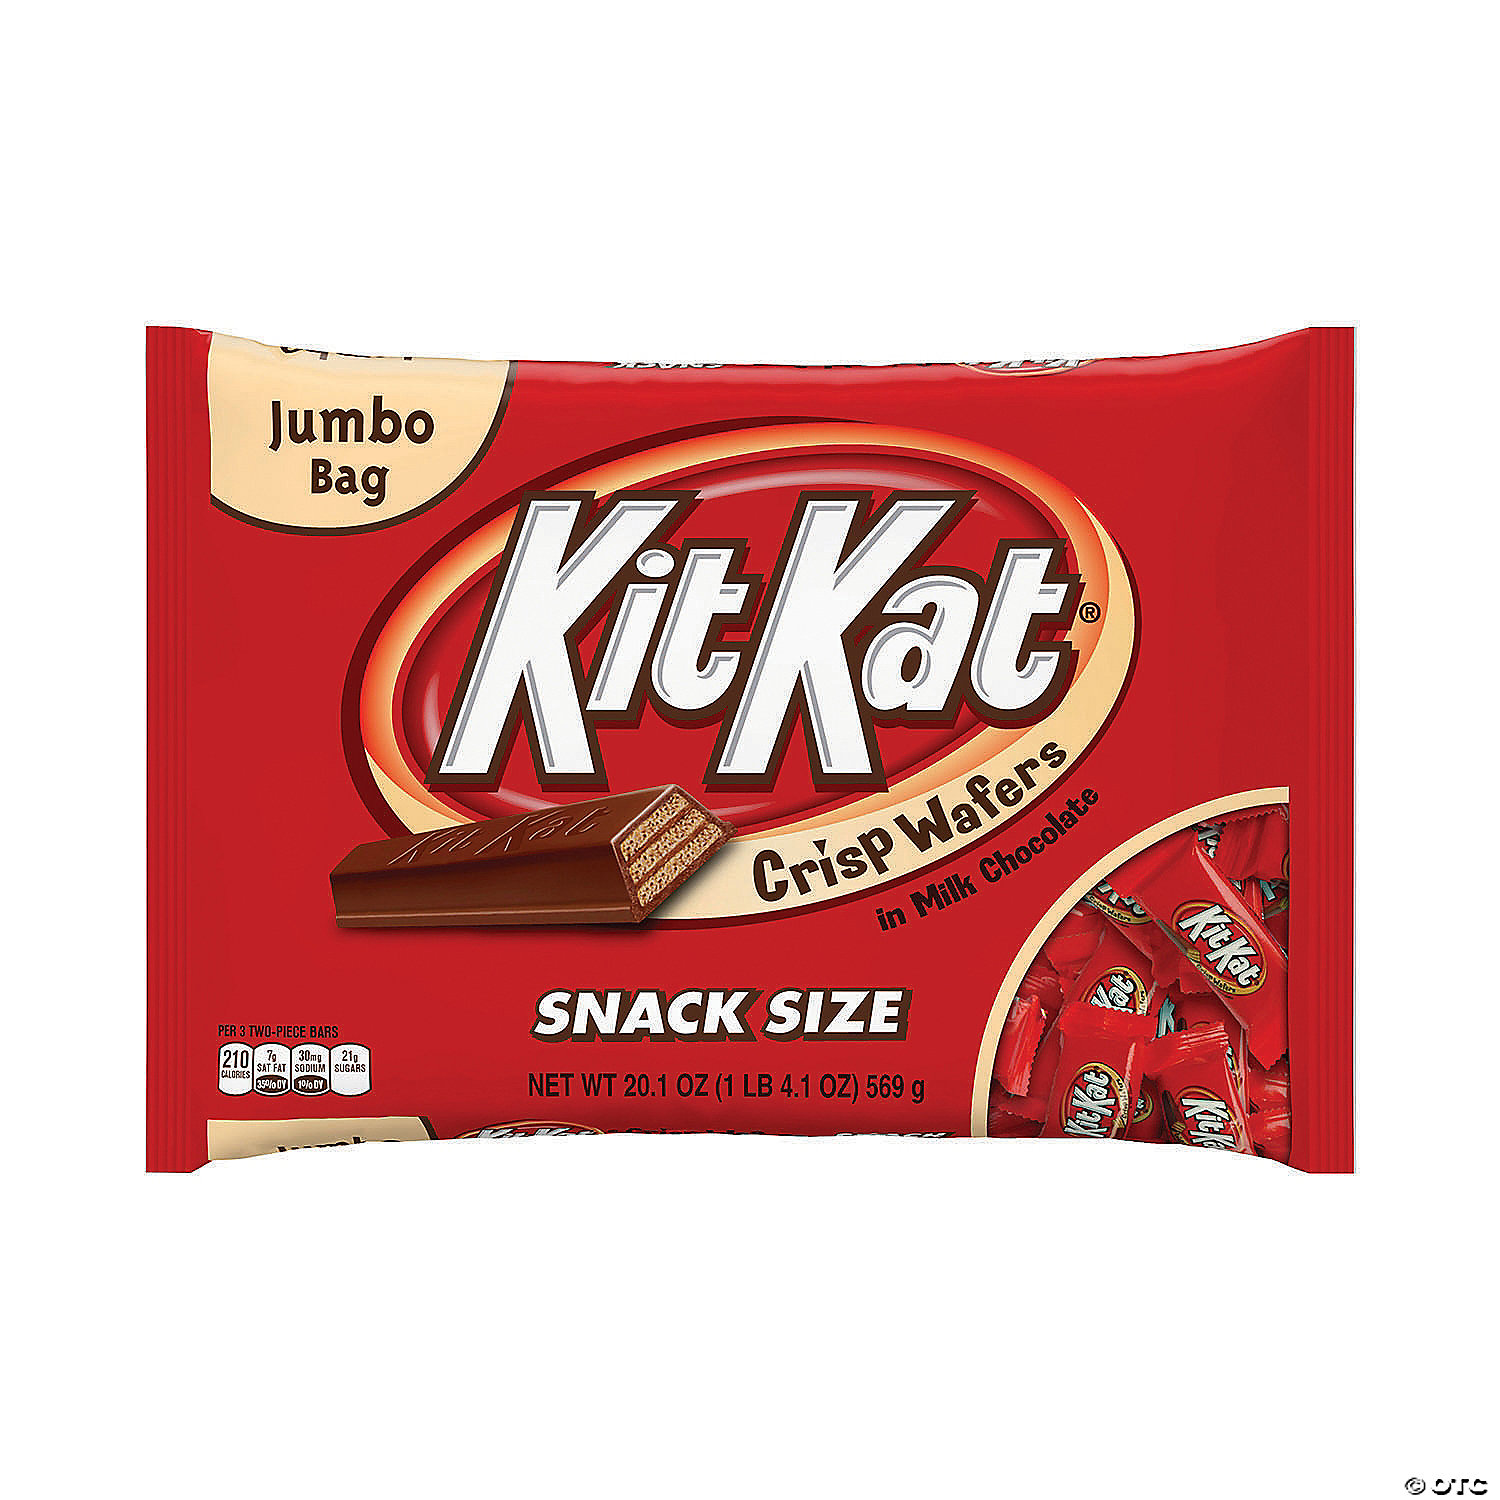 KIT KAT Milk Chocolate Bar 1.5 oz. - 36/Pack